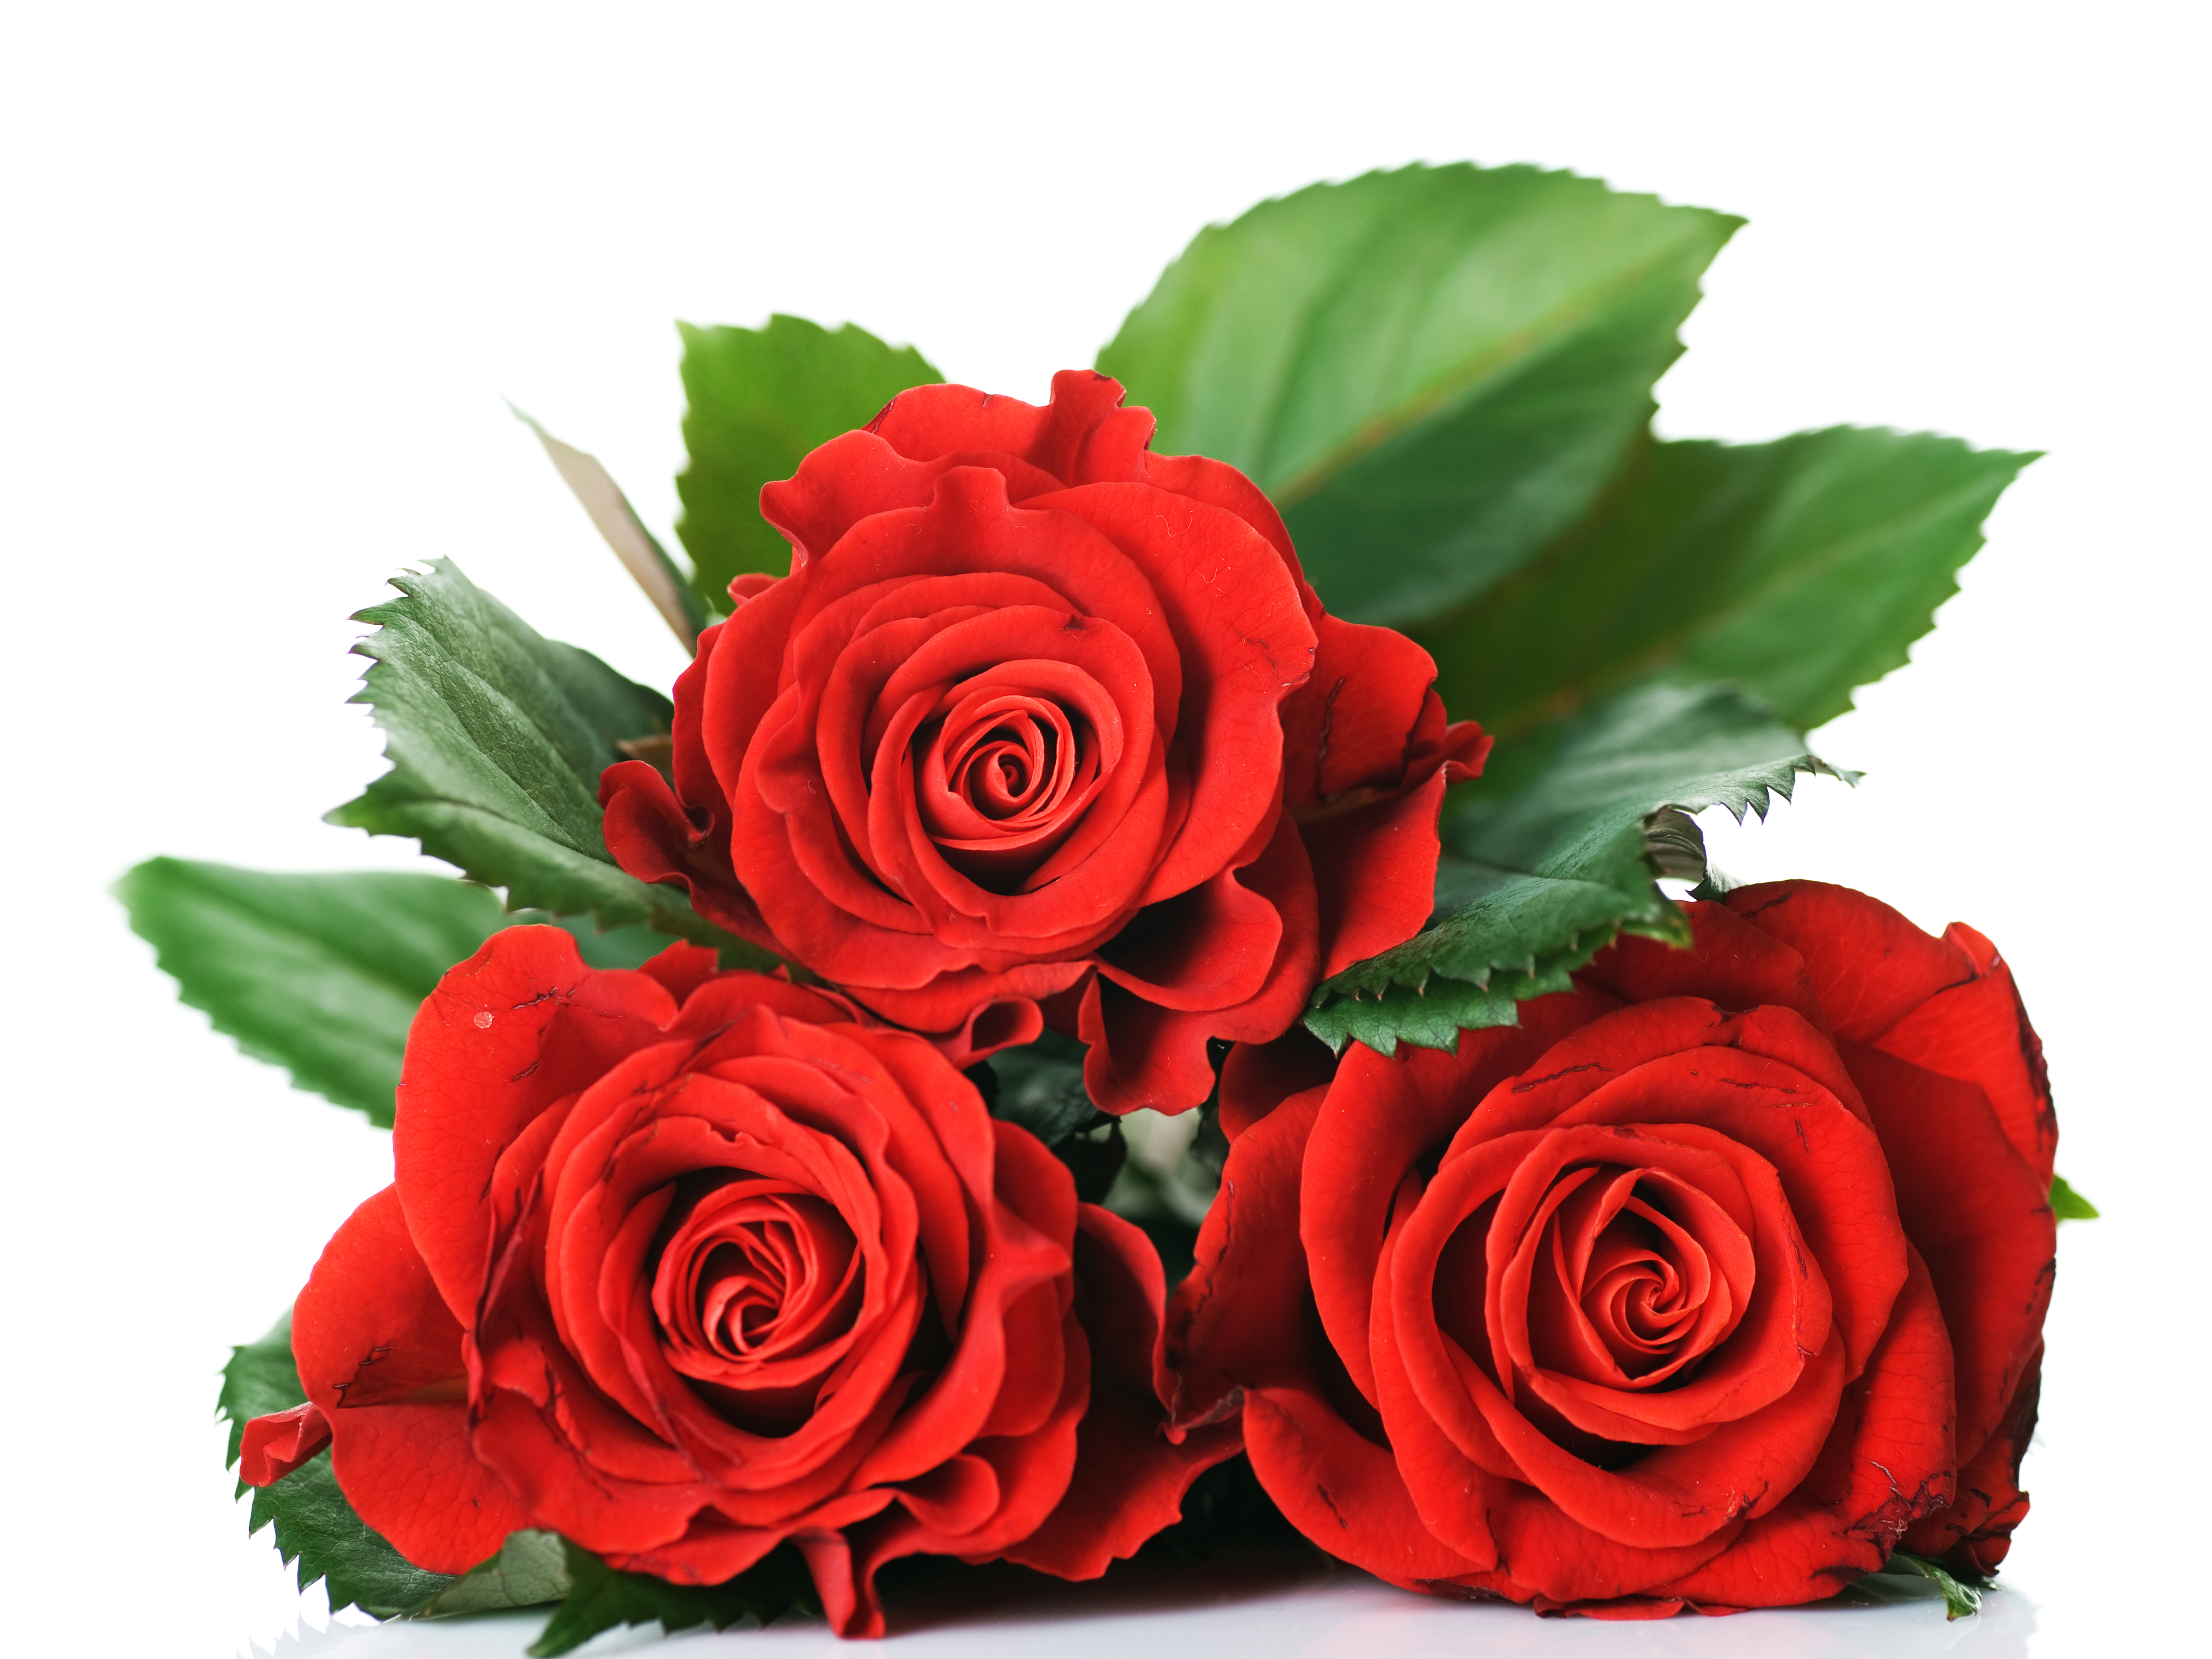 Три красных розы на столе